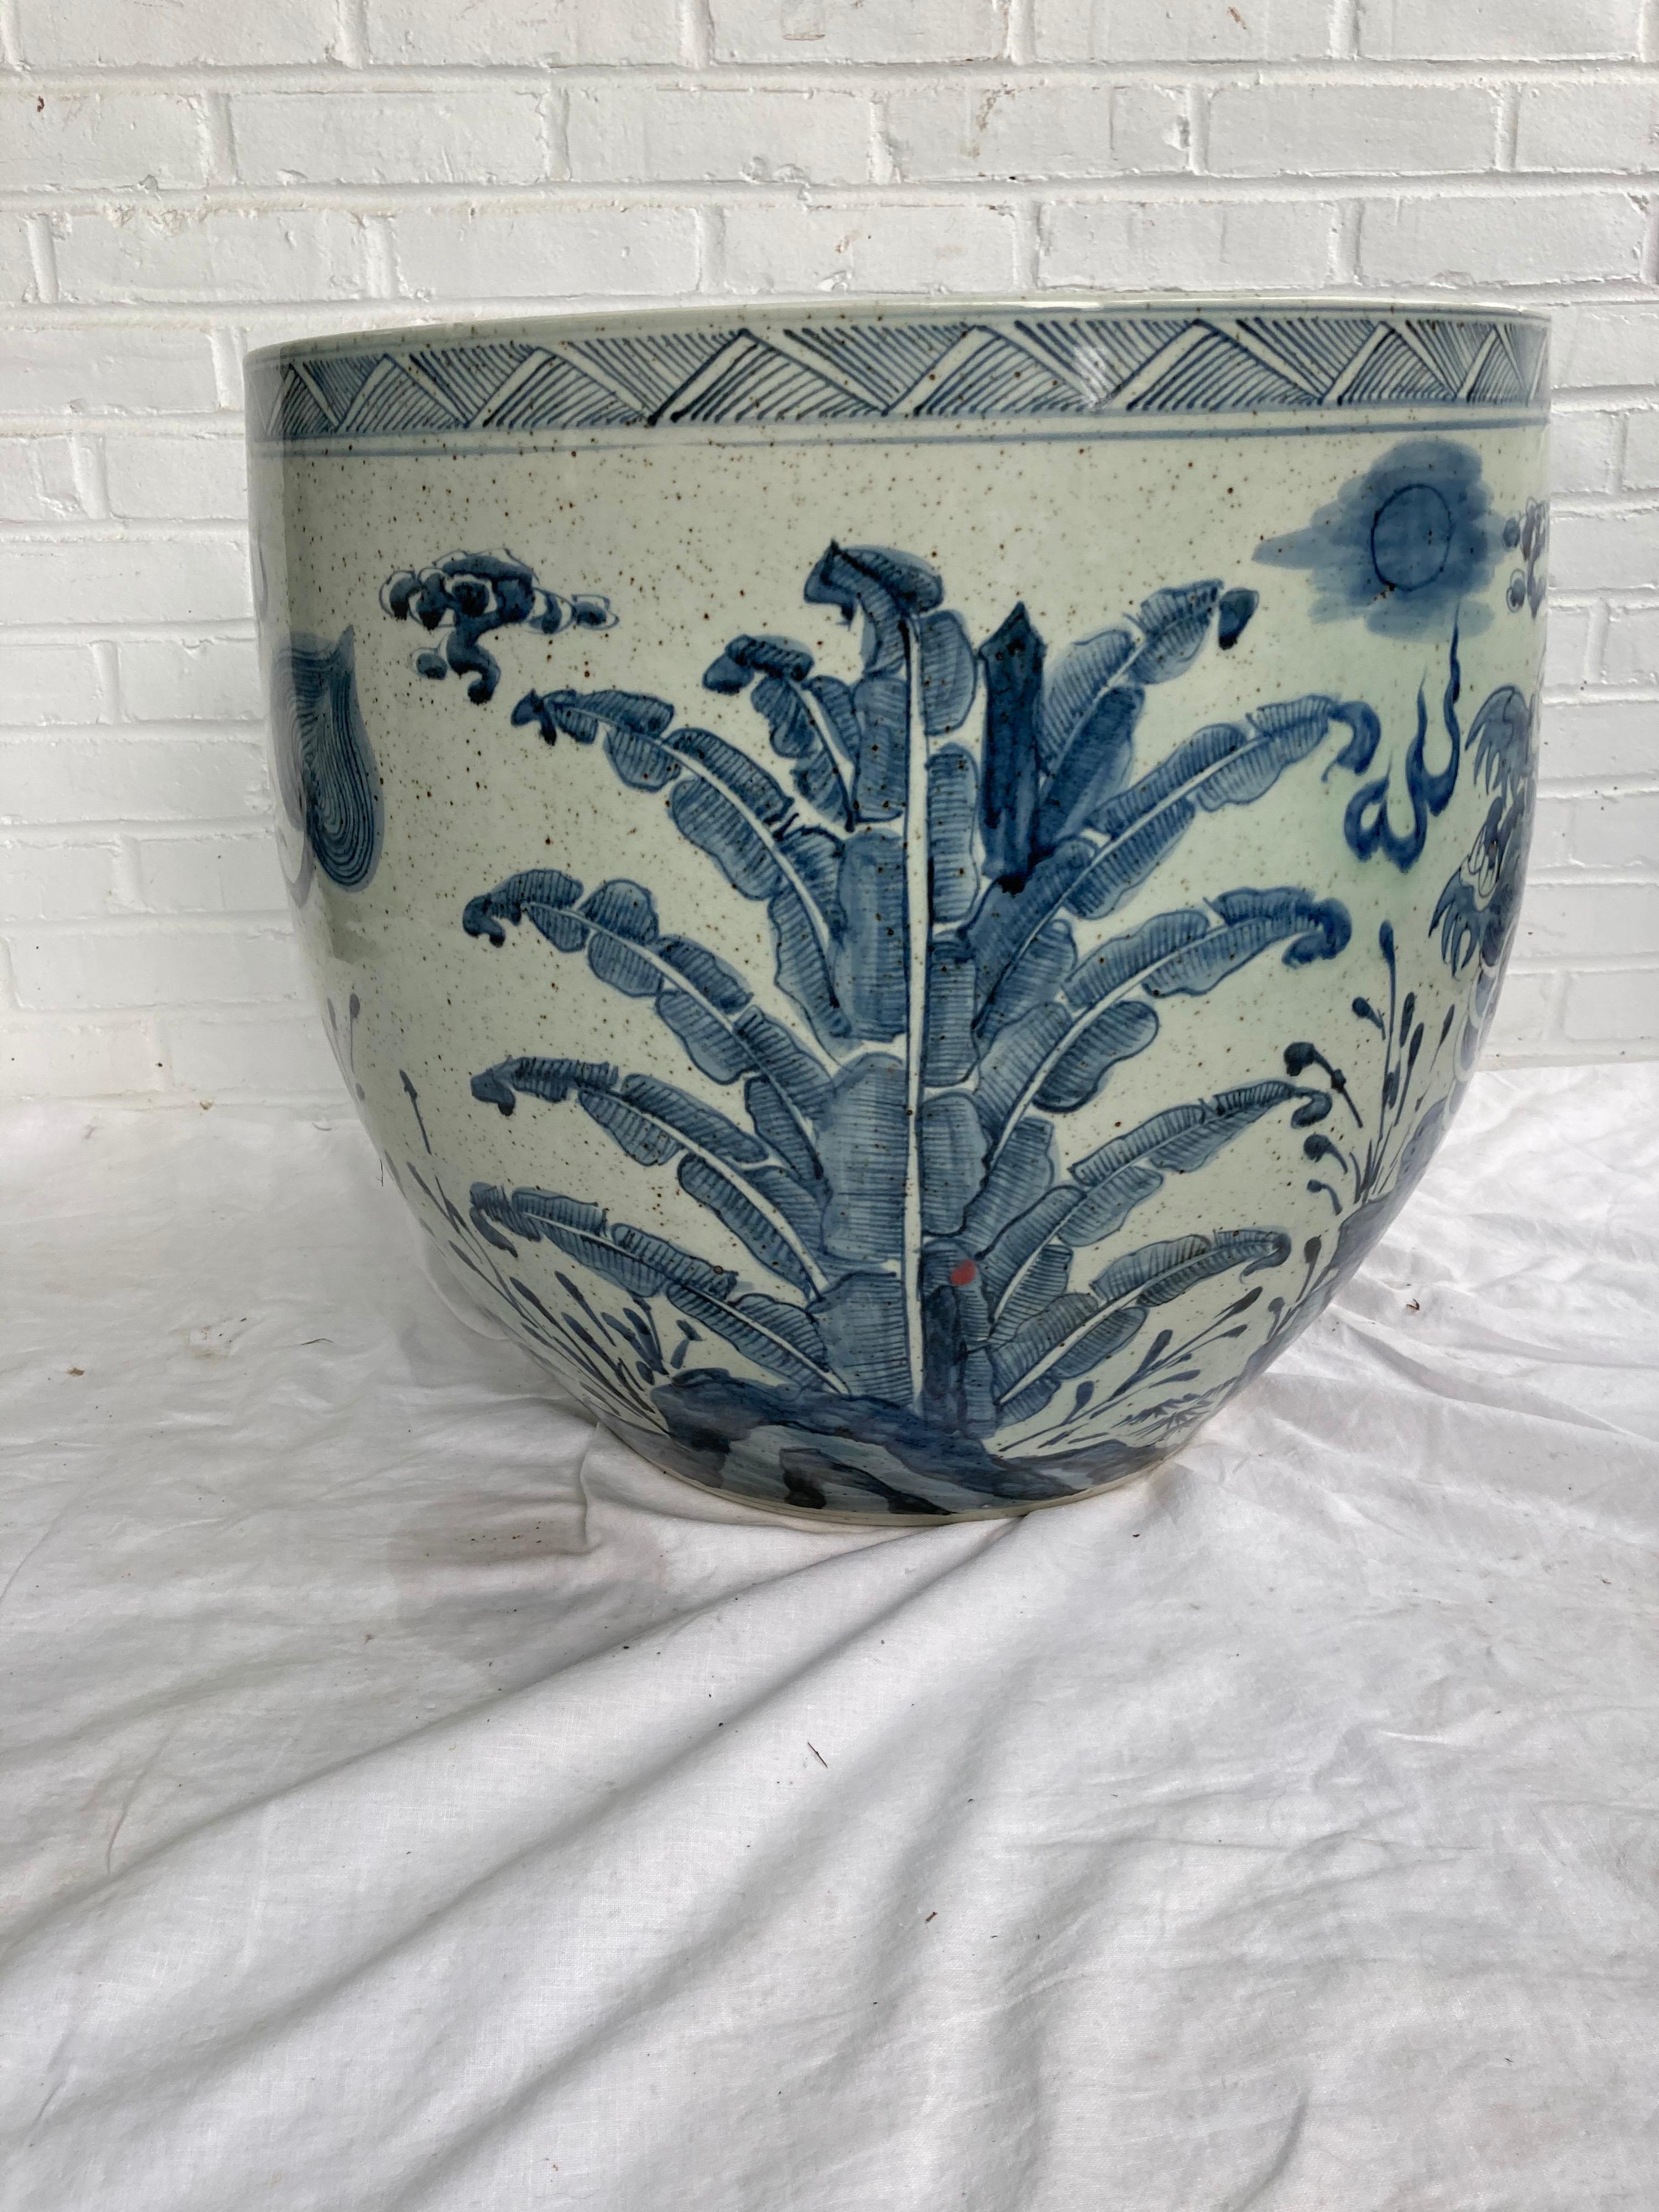 Un très grand bol à poisson/planteur chinois bleu et blanc représentant un dragon et des palmiers ... très lourd.